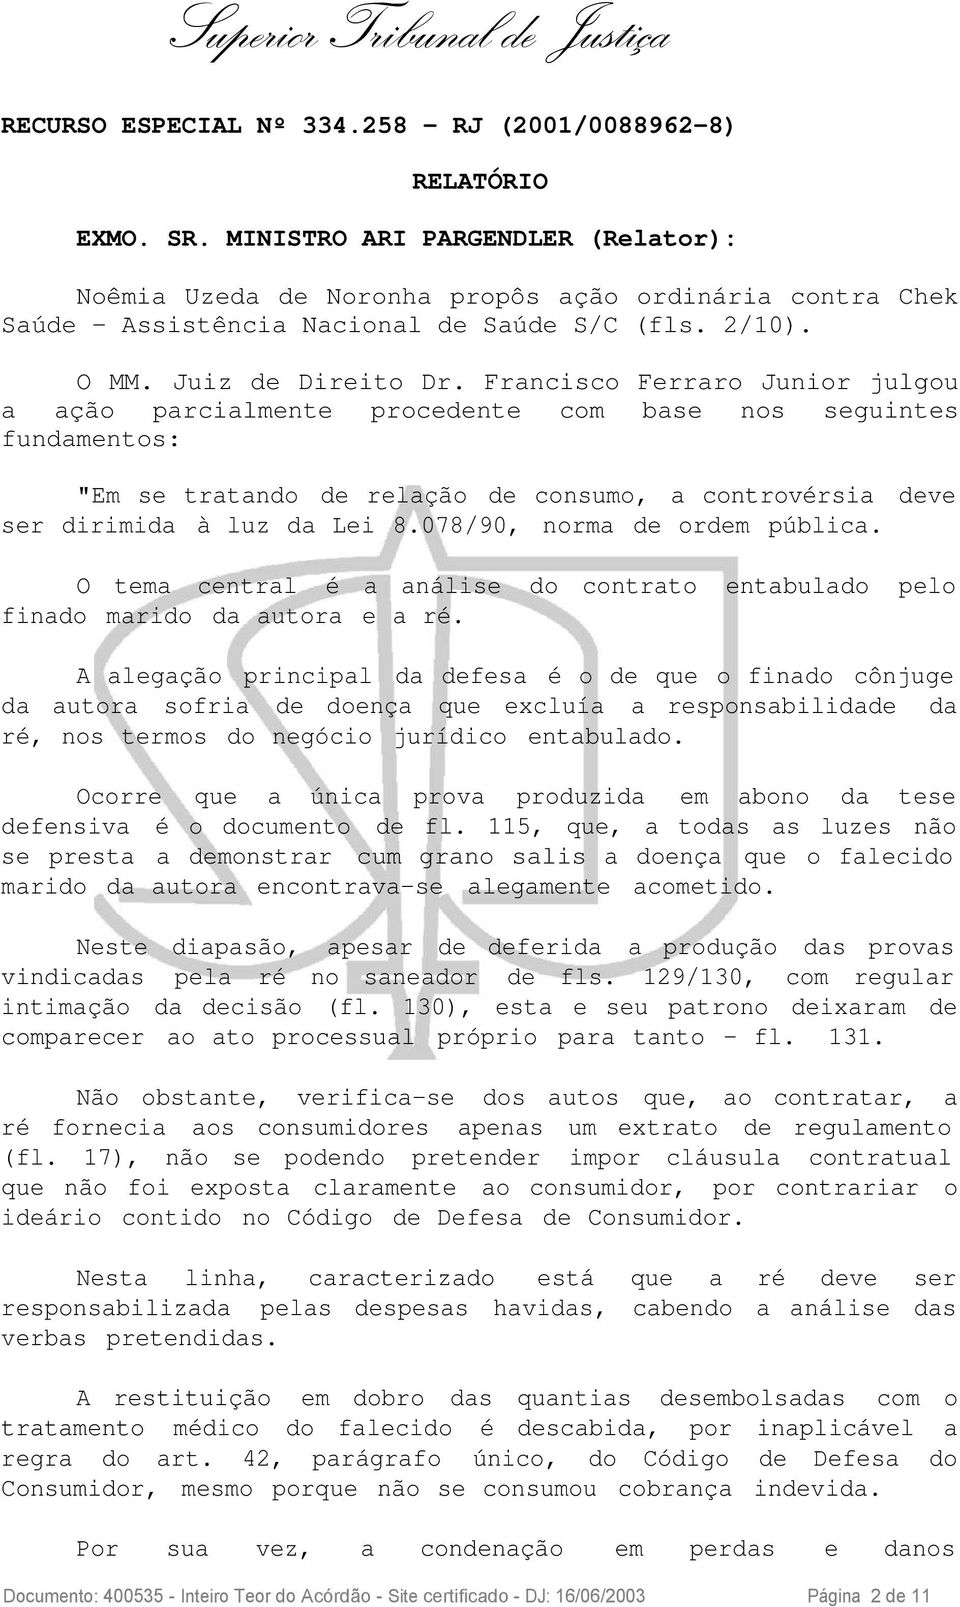 Francisco Ferraro Junior julgou a ação parcialmente procedente com base nos seguintes fundamentos: "Em se tratando de relação de consumo, a controvérsia deve ser dirimida à luz da Lei 8.